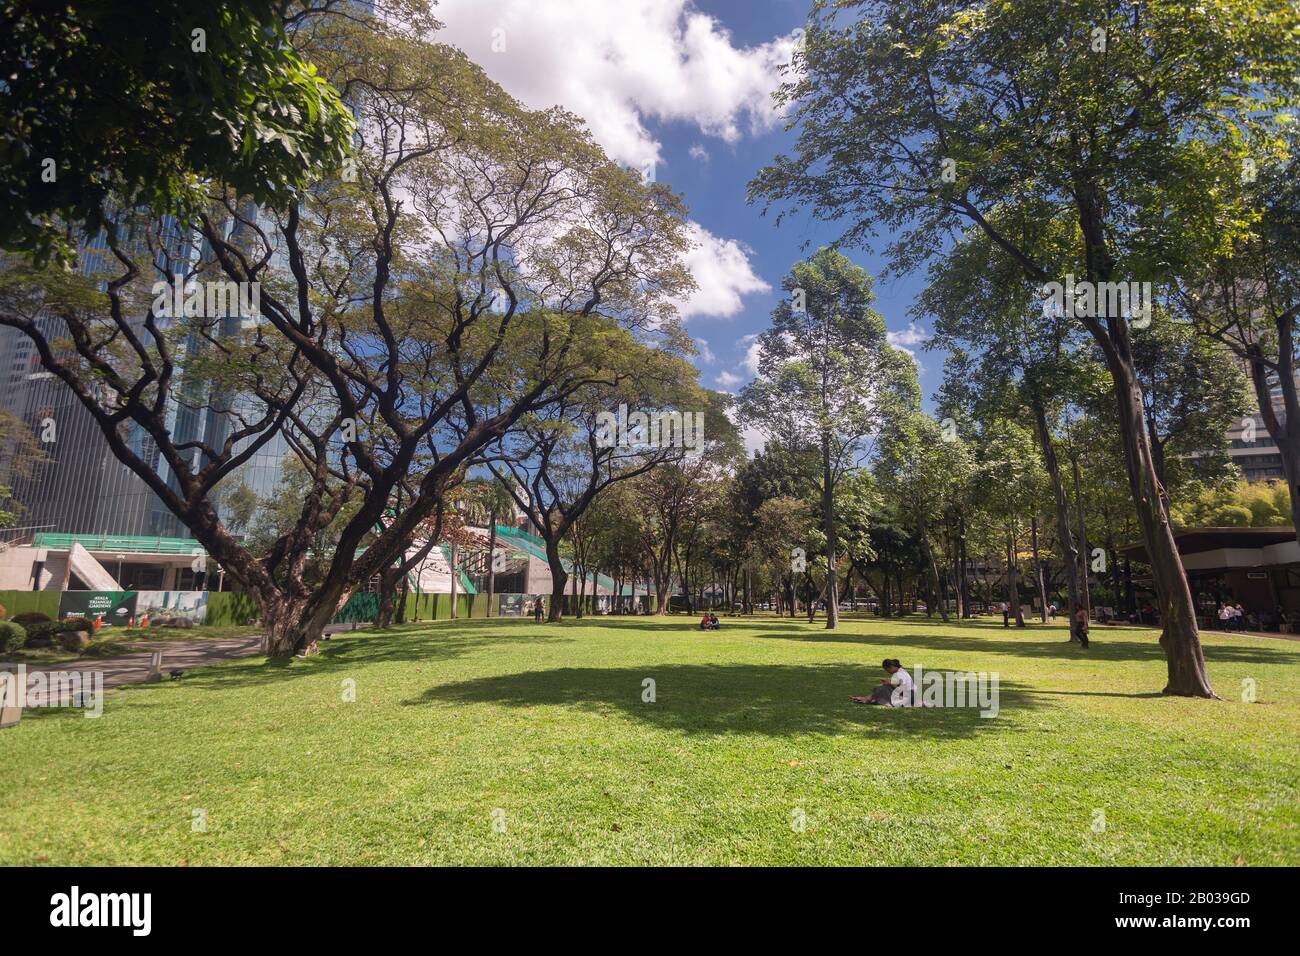 Métro Manille, Philippines - 12 février 2020: Ayala Triangle jardins et parc à Makati, une journée ensoleillée Banque D'Images